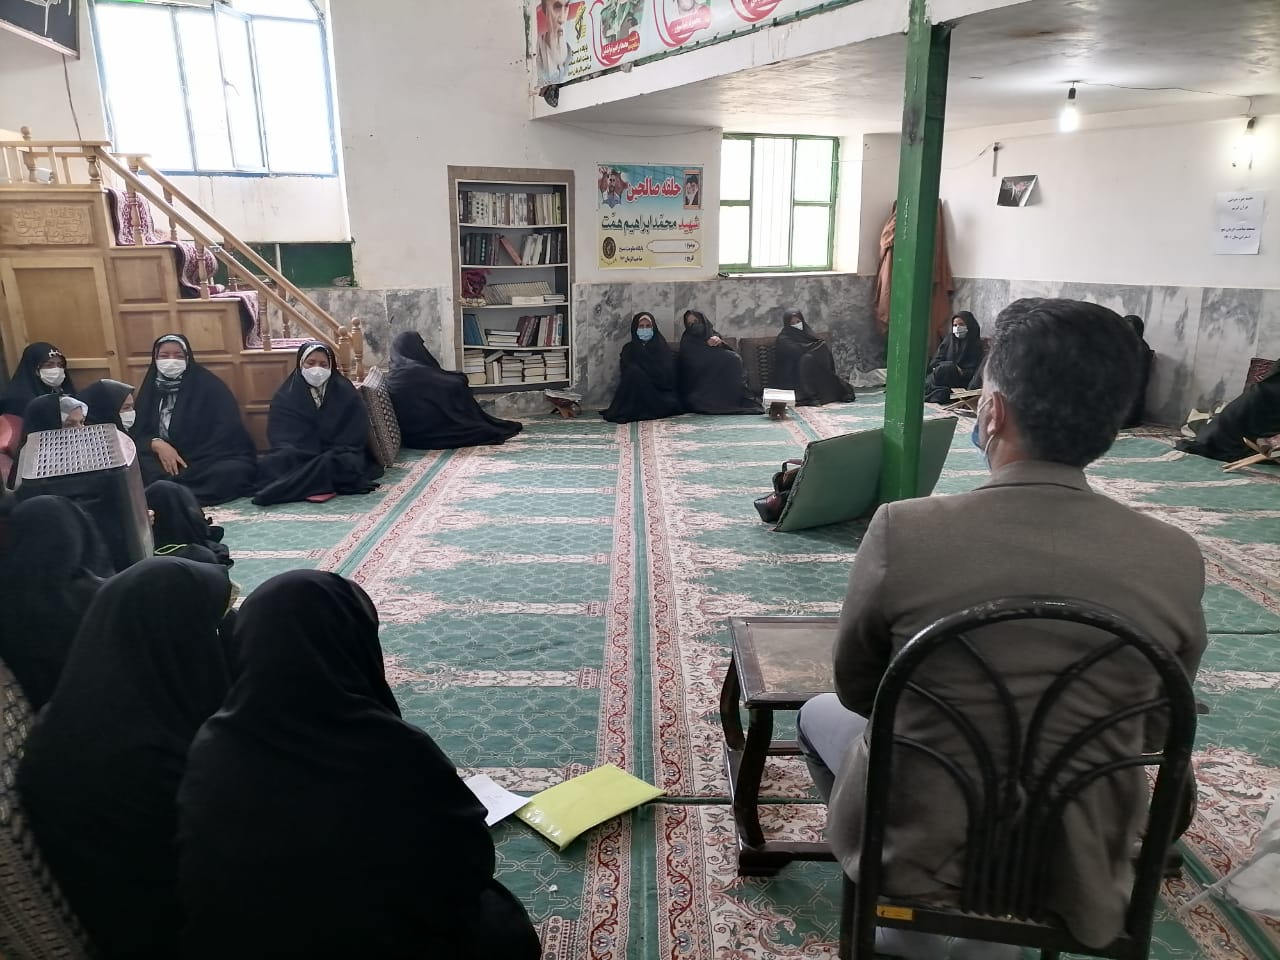 کارگاه آموزشي مبارزه با اعتياد در محل مسجد صاحب الزمان (عج) اسفراين